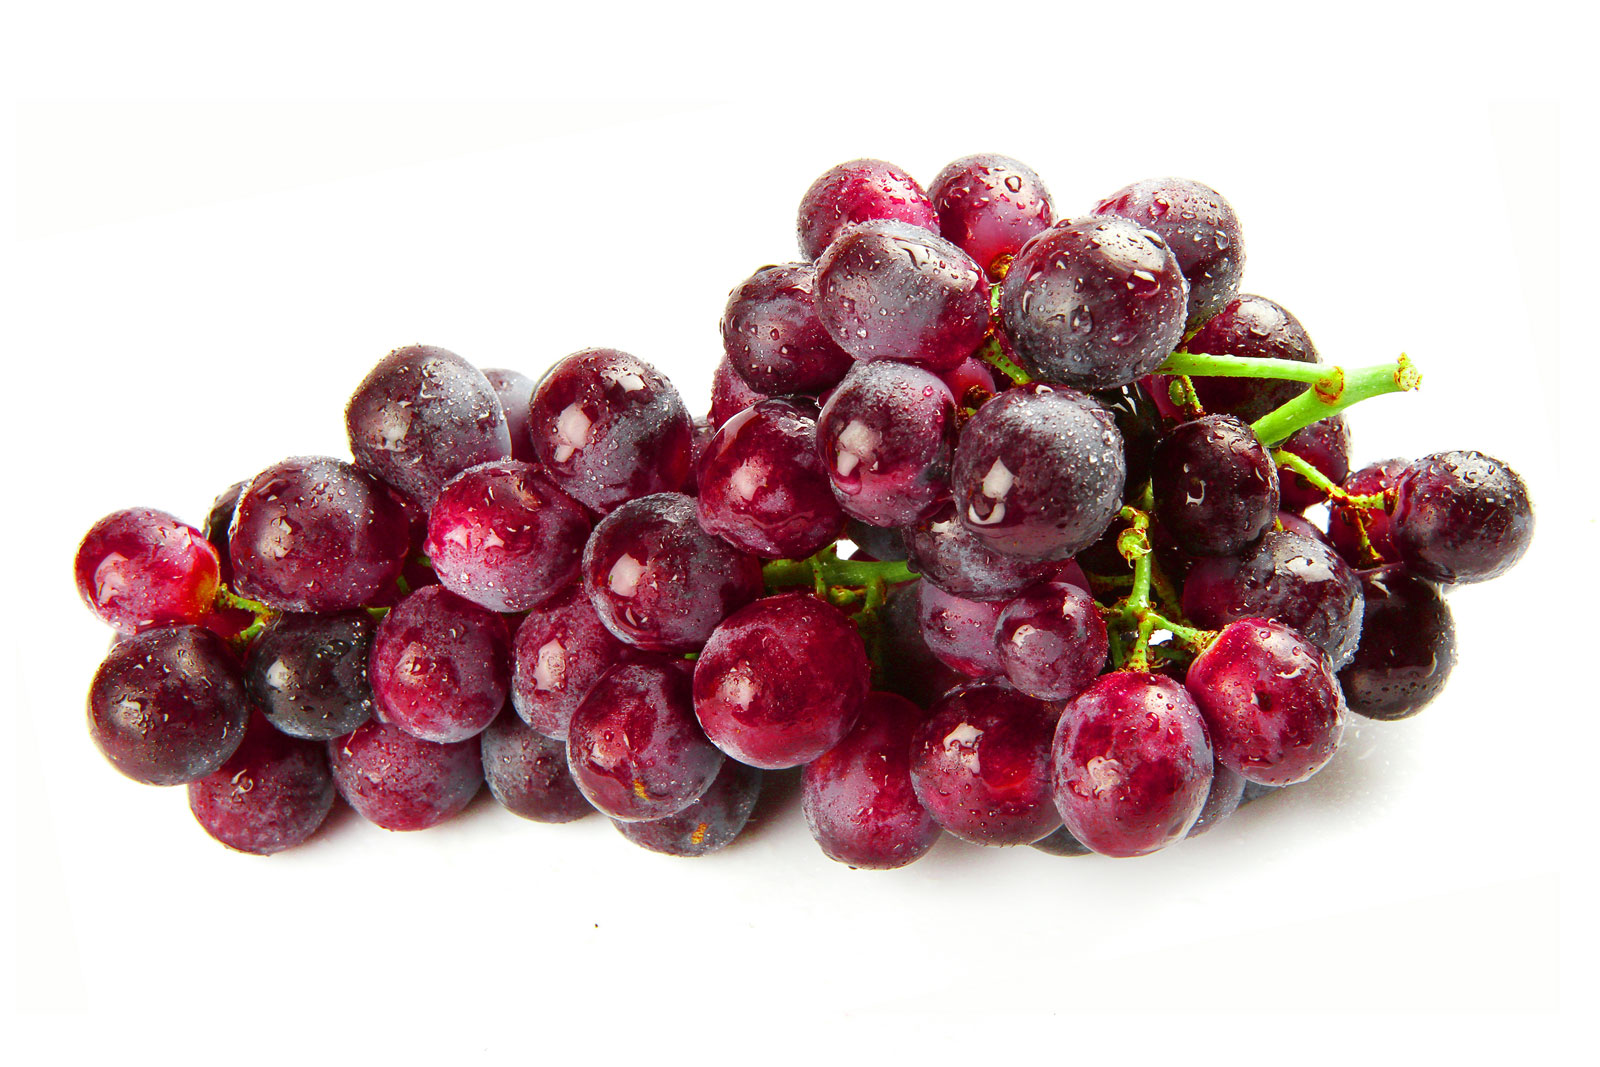 Foto de um cacho de uva vermelha sobre uma superfície branca